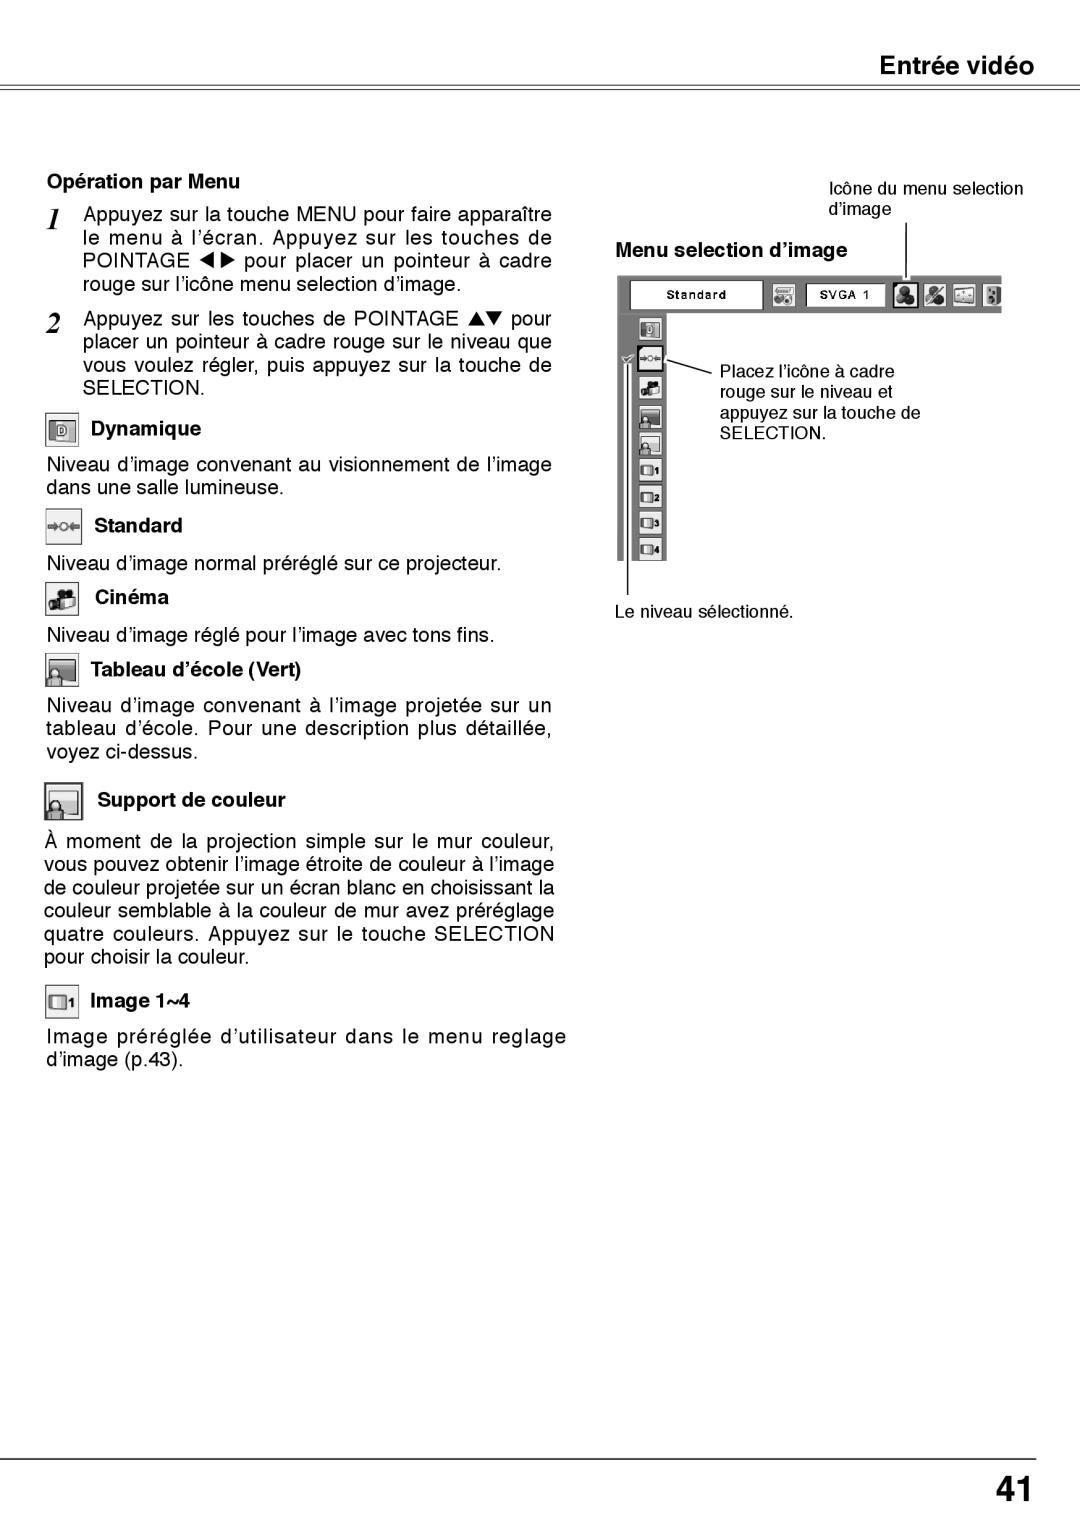 Fisher PLC-XW60 manual Image 1~4, Menu selection d’image, Entrée vidéo, Opération par Menu, Dynamique, Standard, Cinéma 